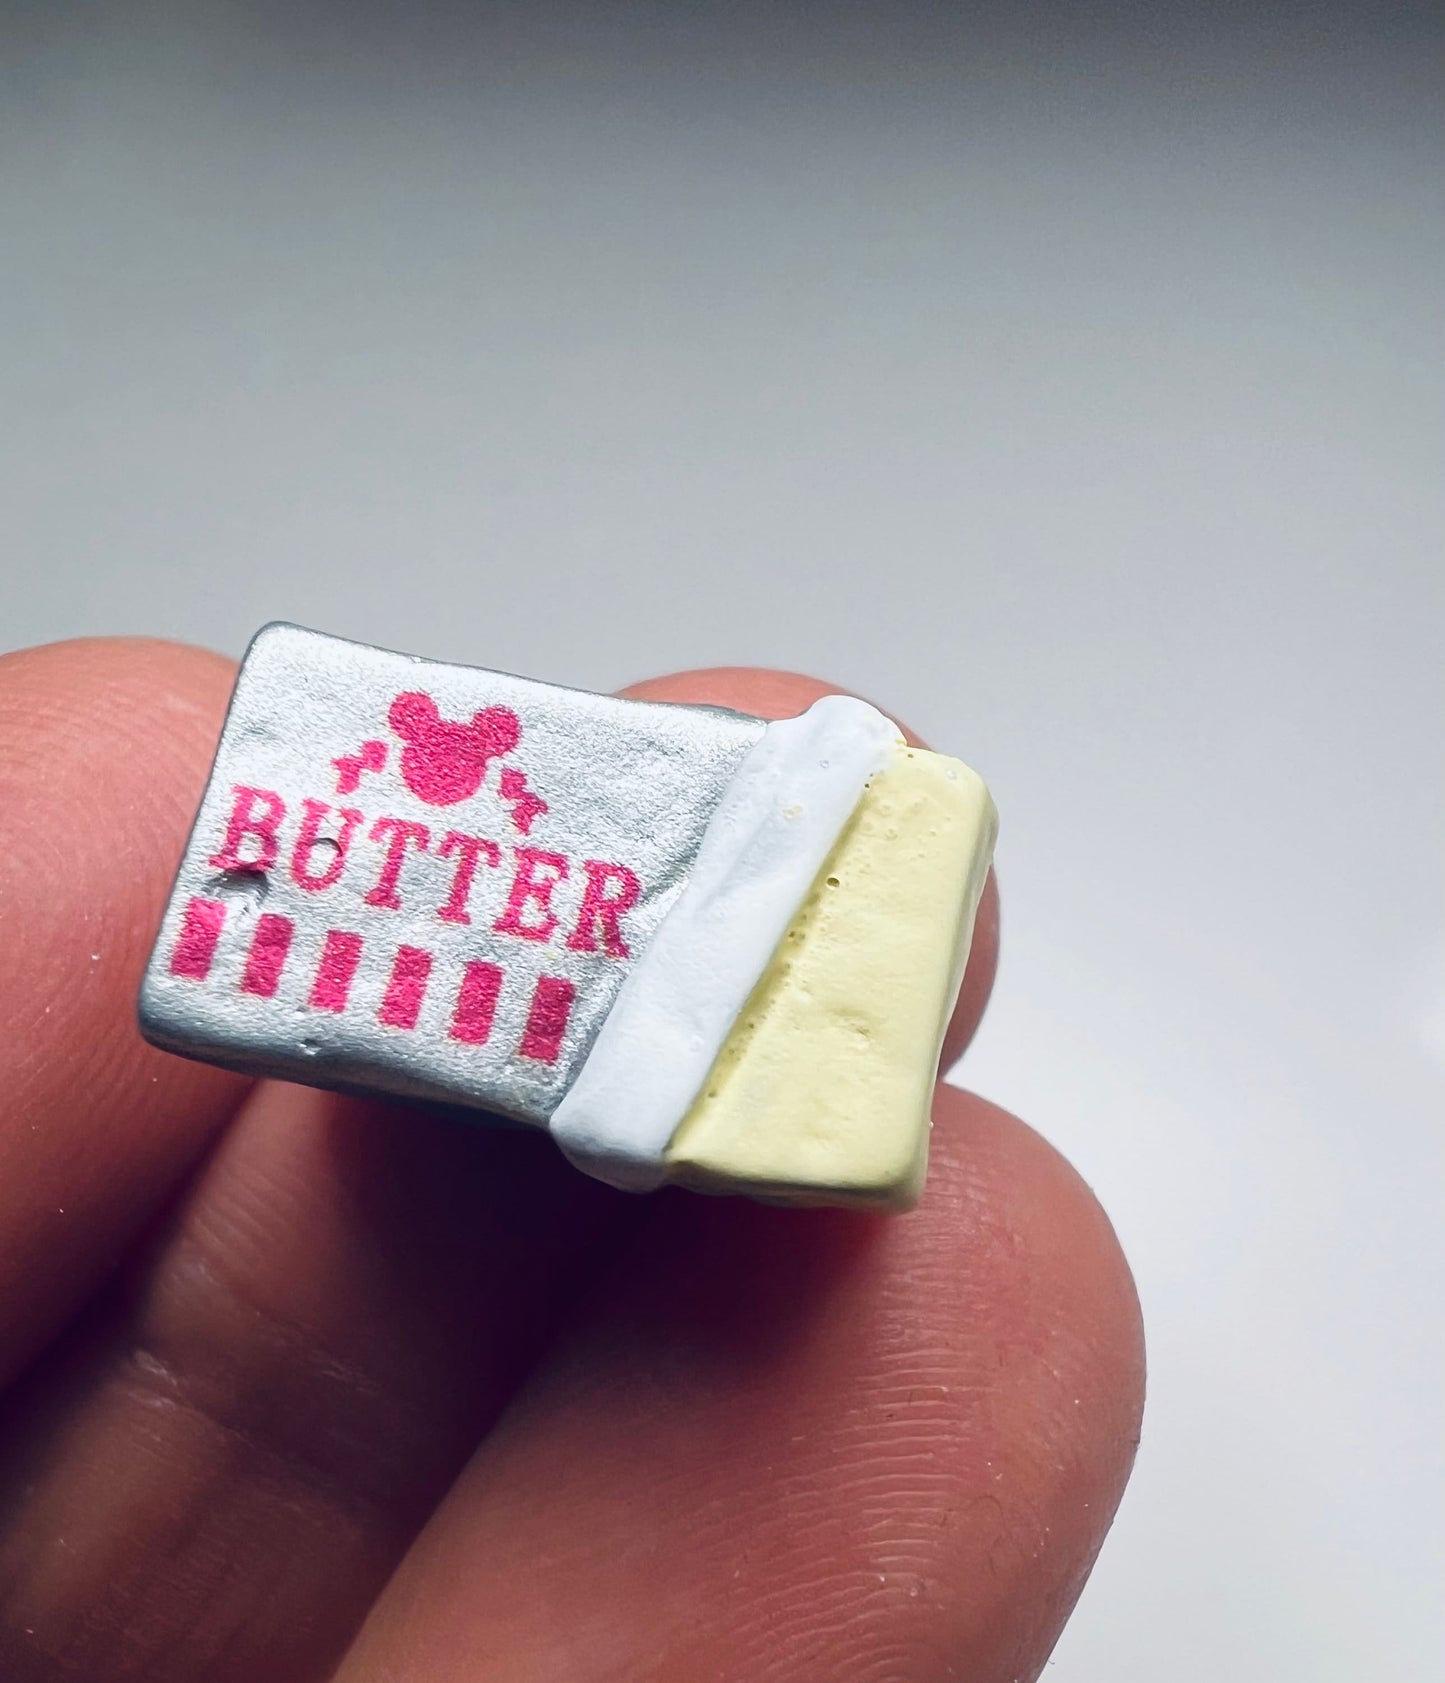 Baratija de mantequilla en miniatura - Mini objetos de comida Baratijas temáticas de la tienda de comestibles - Miniaturas de casa de muñecas para hornear - Objetos de sonido Montessori